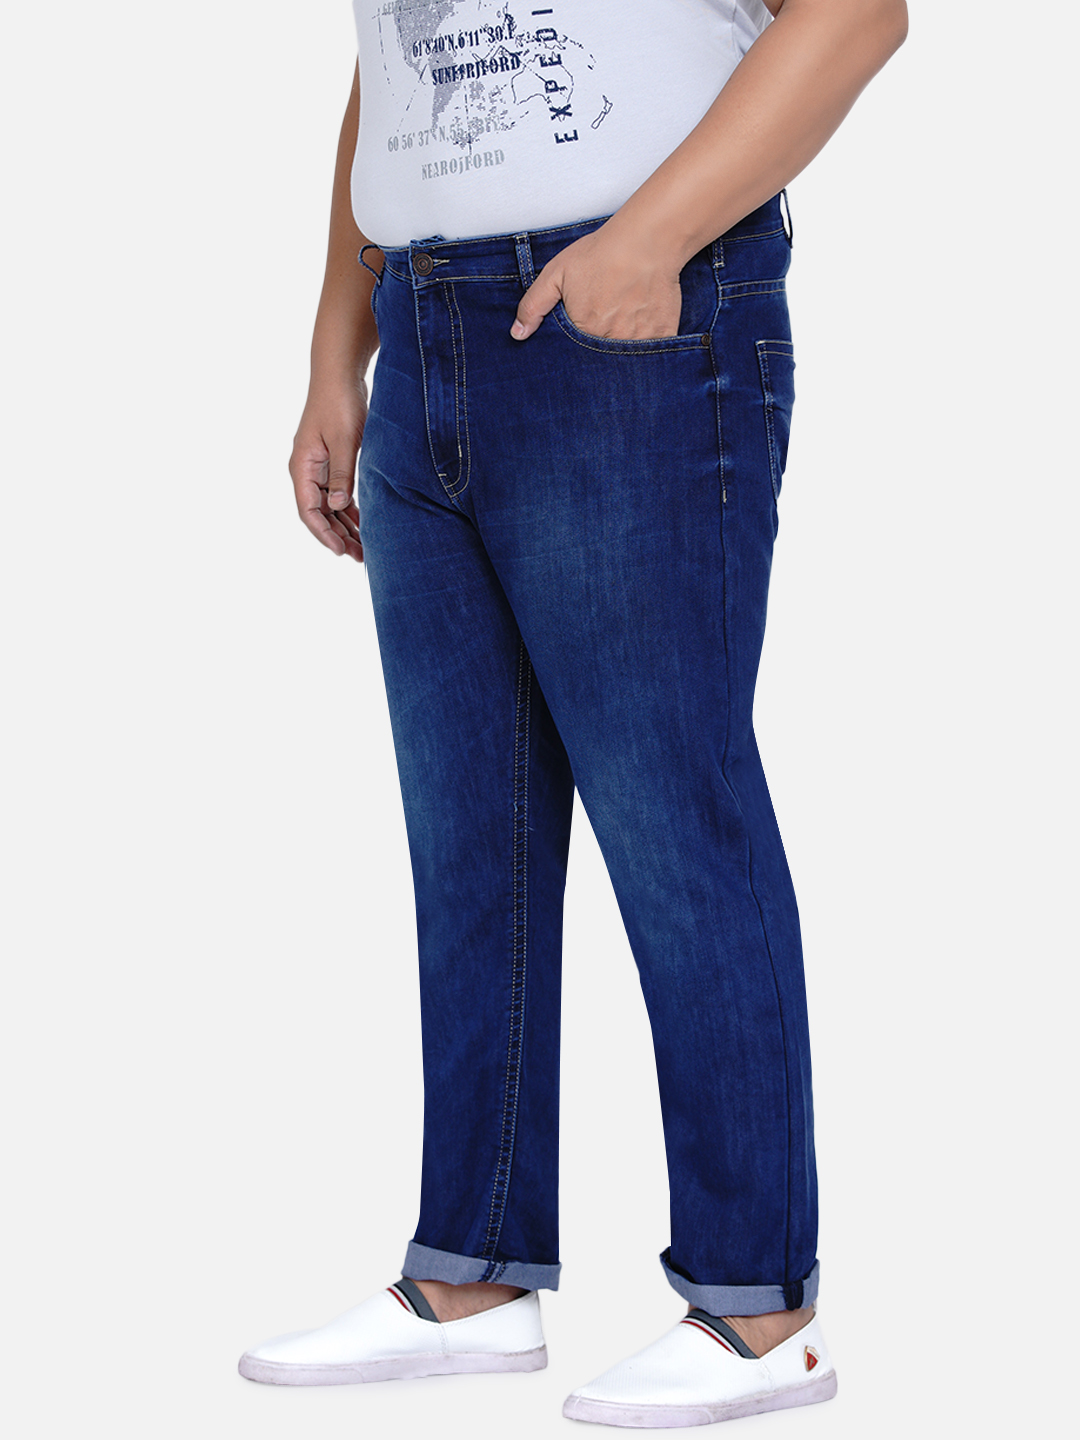 affordables/jeans/JPJ2016/jpj2016-4.jpg